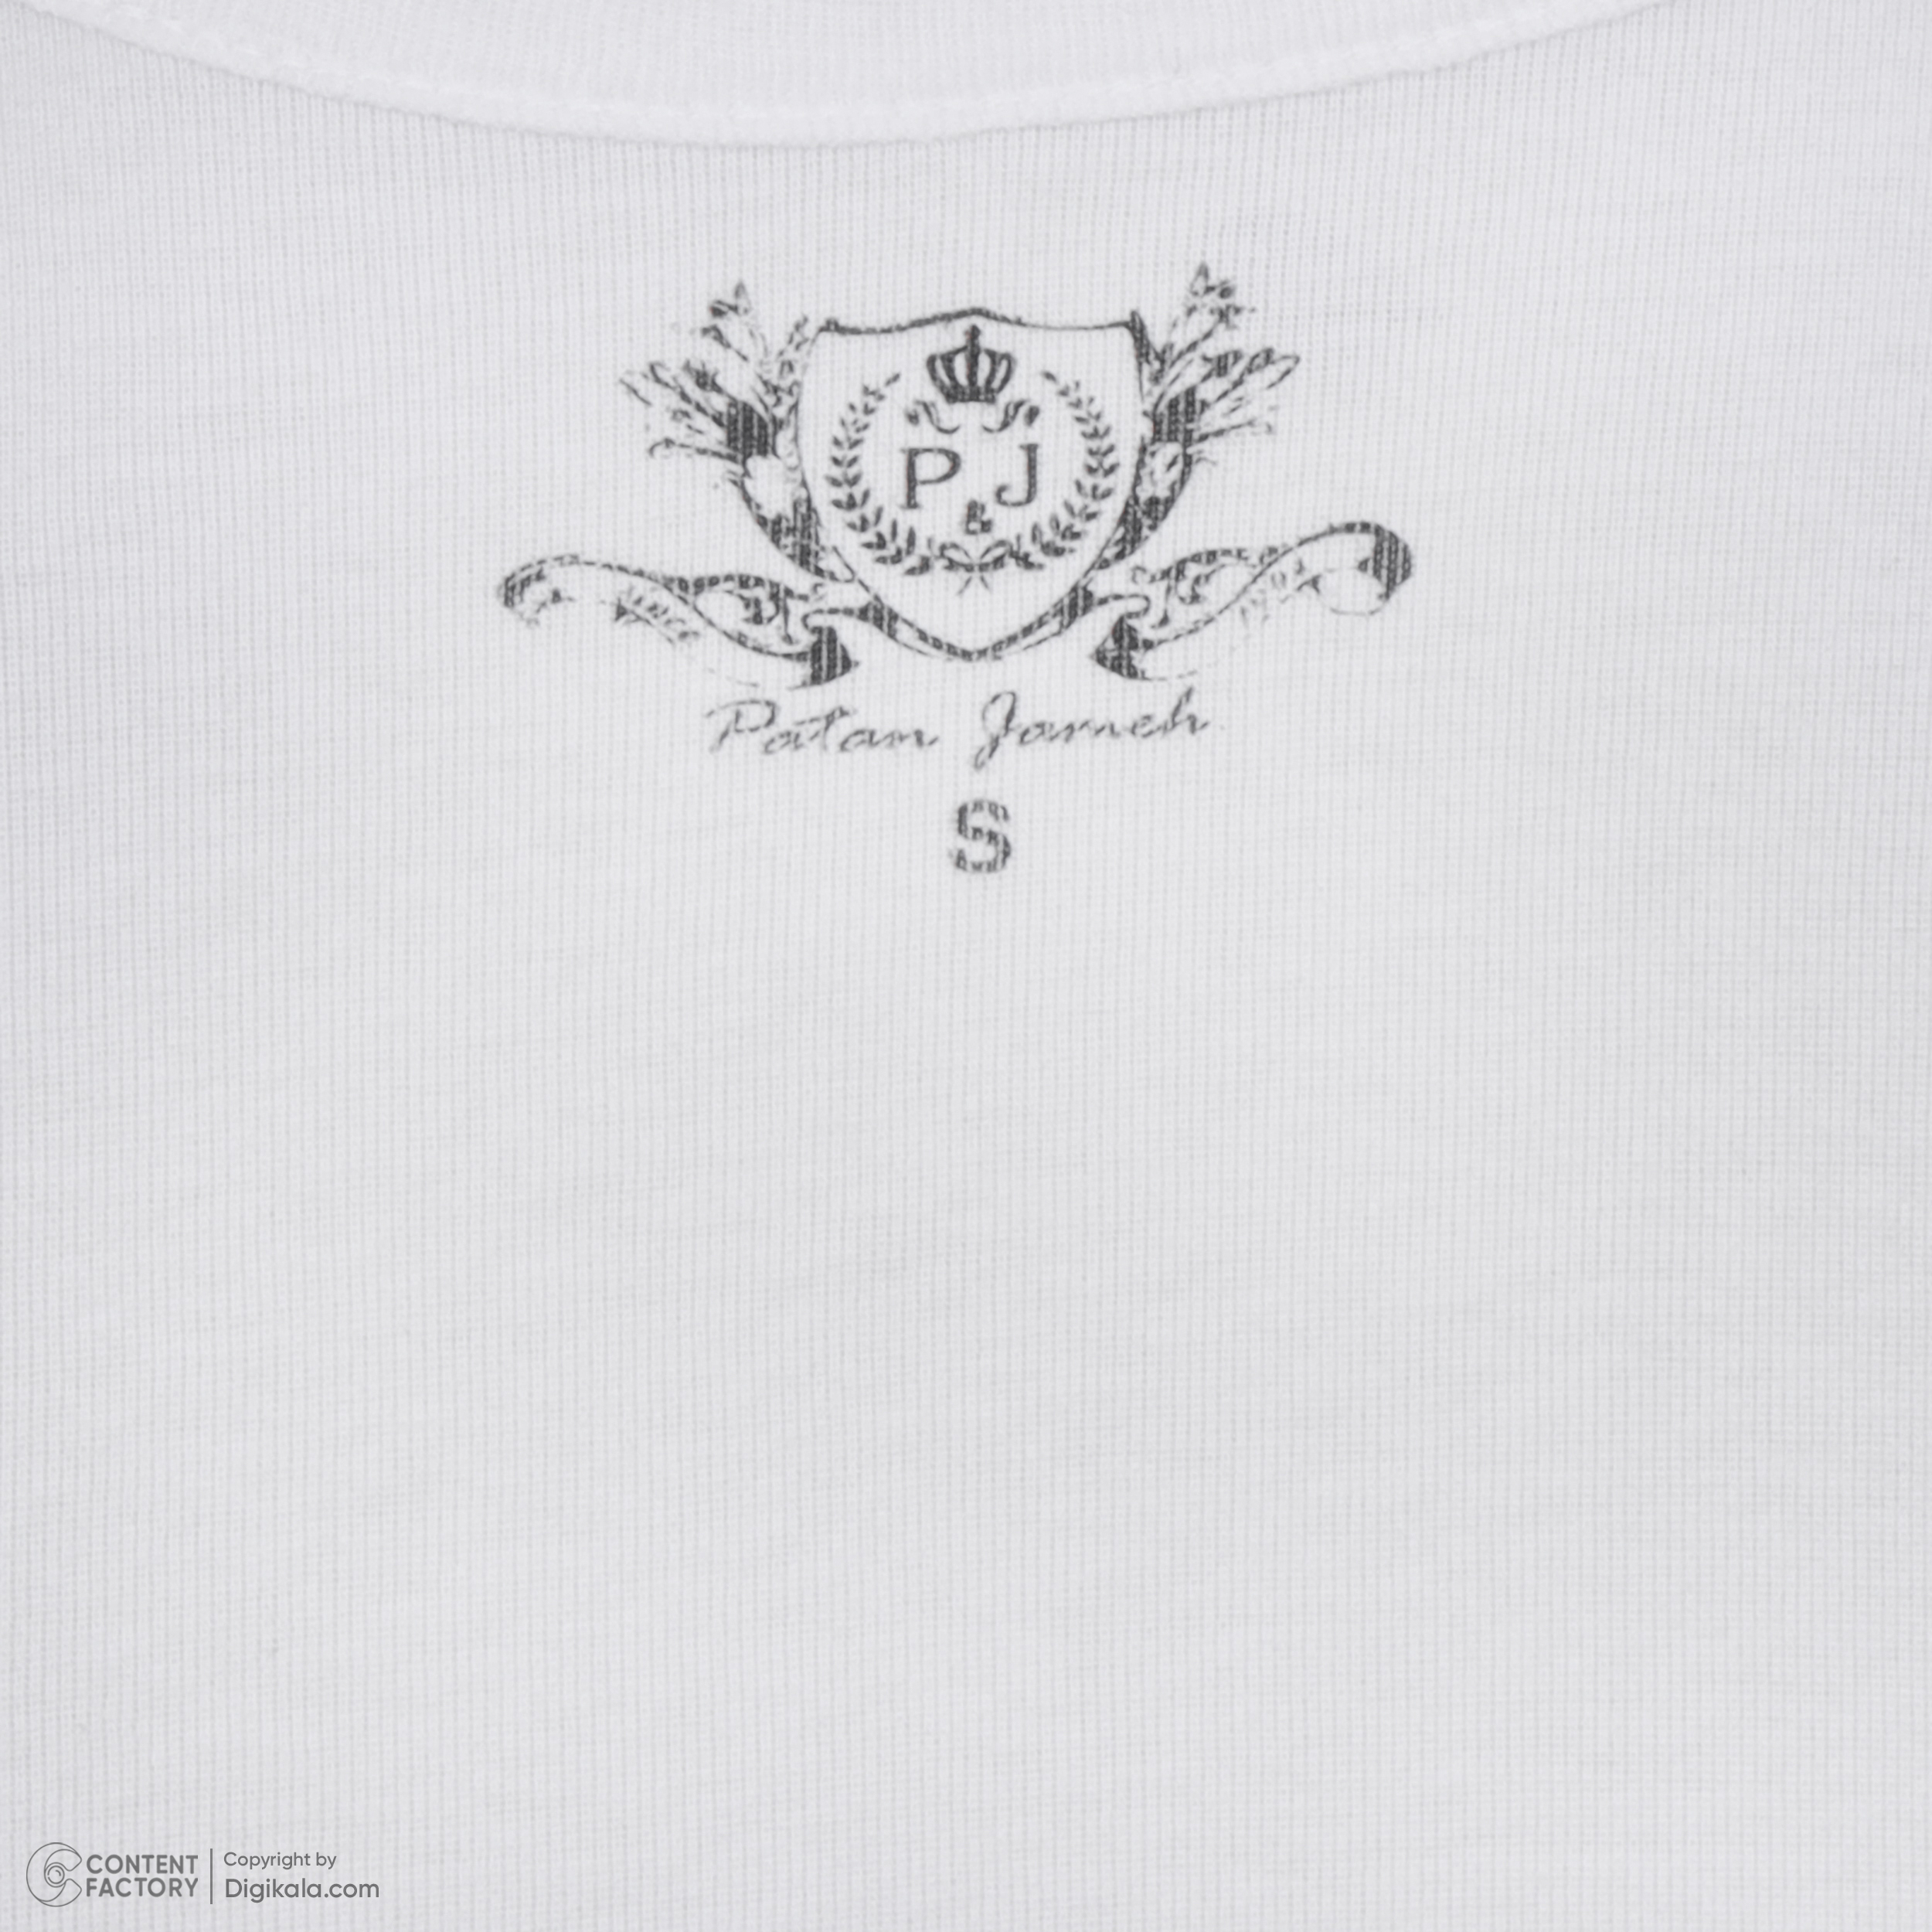 تی شرت آستین کوتاه زنانه پاتن جامه مدل فیانگو 131631020123000 رنگ سفید -  - 5